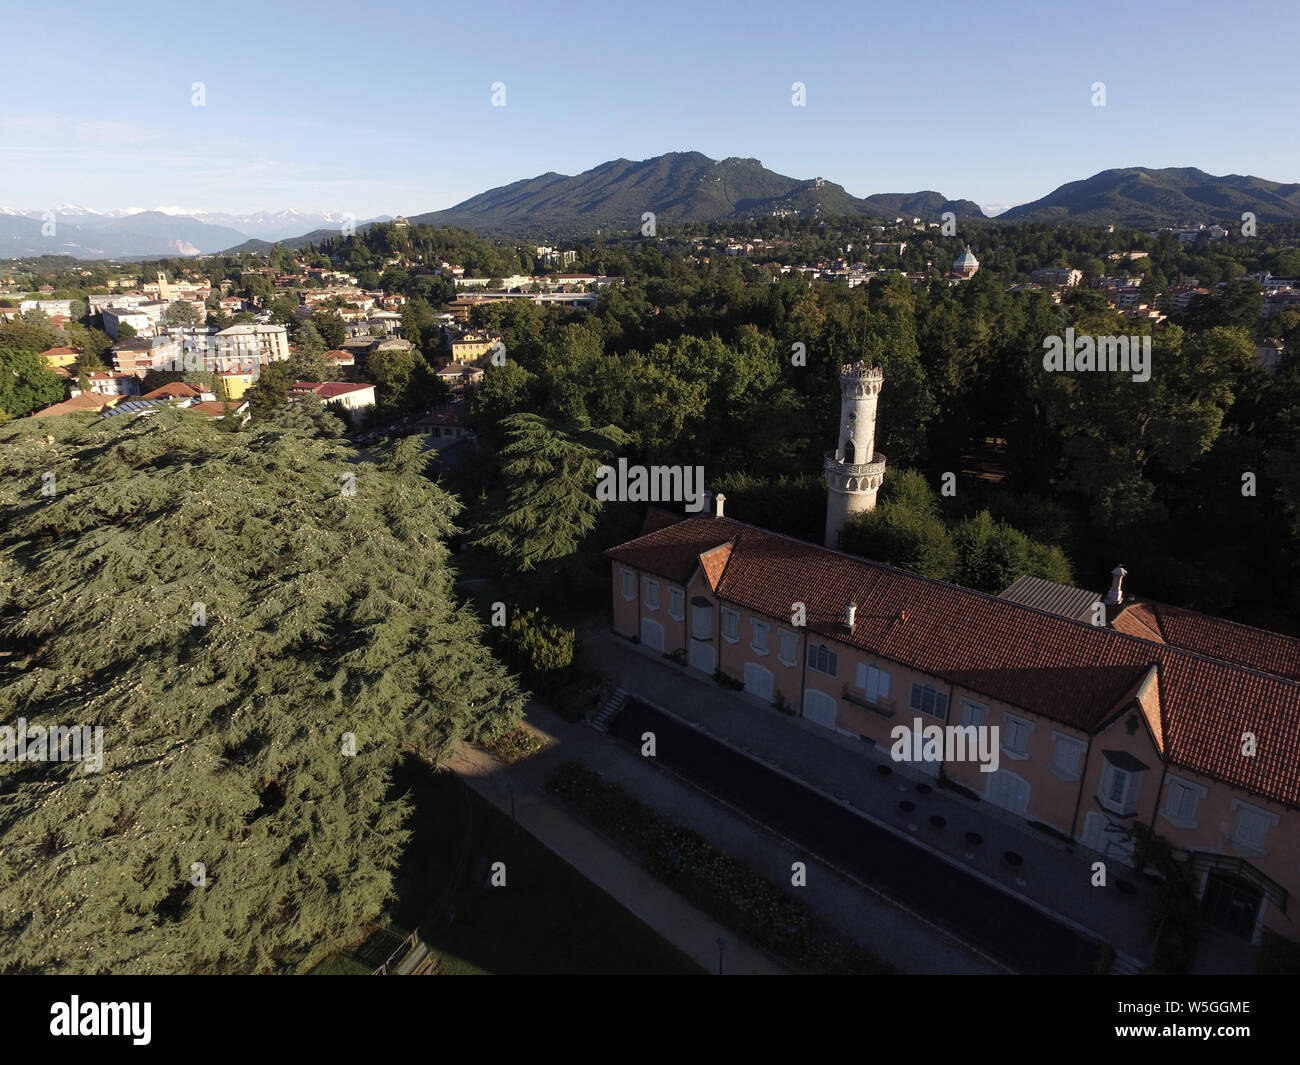 Italy, Lombardy, Varese, Villa Mirabello palace Stock Photo